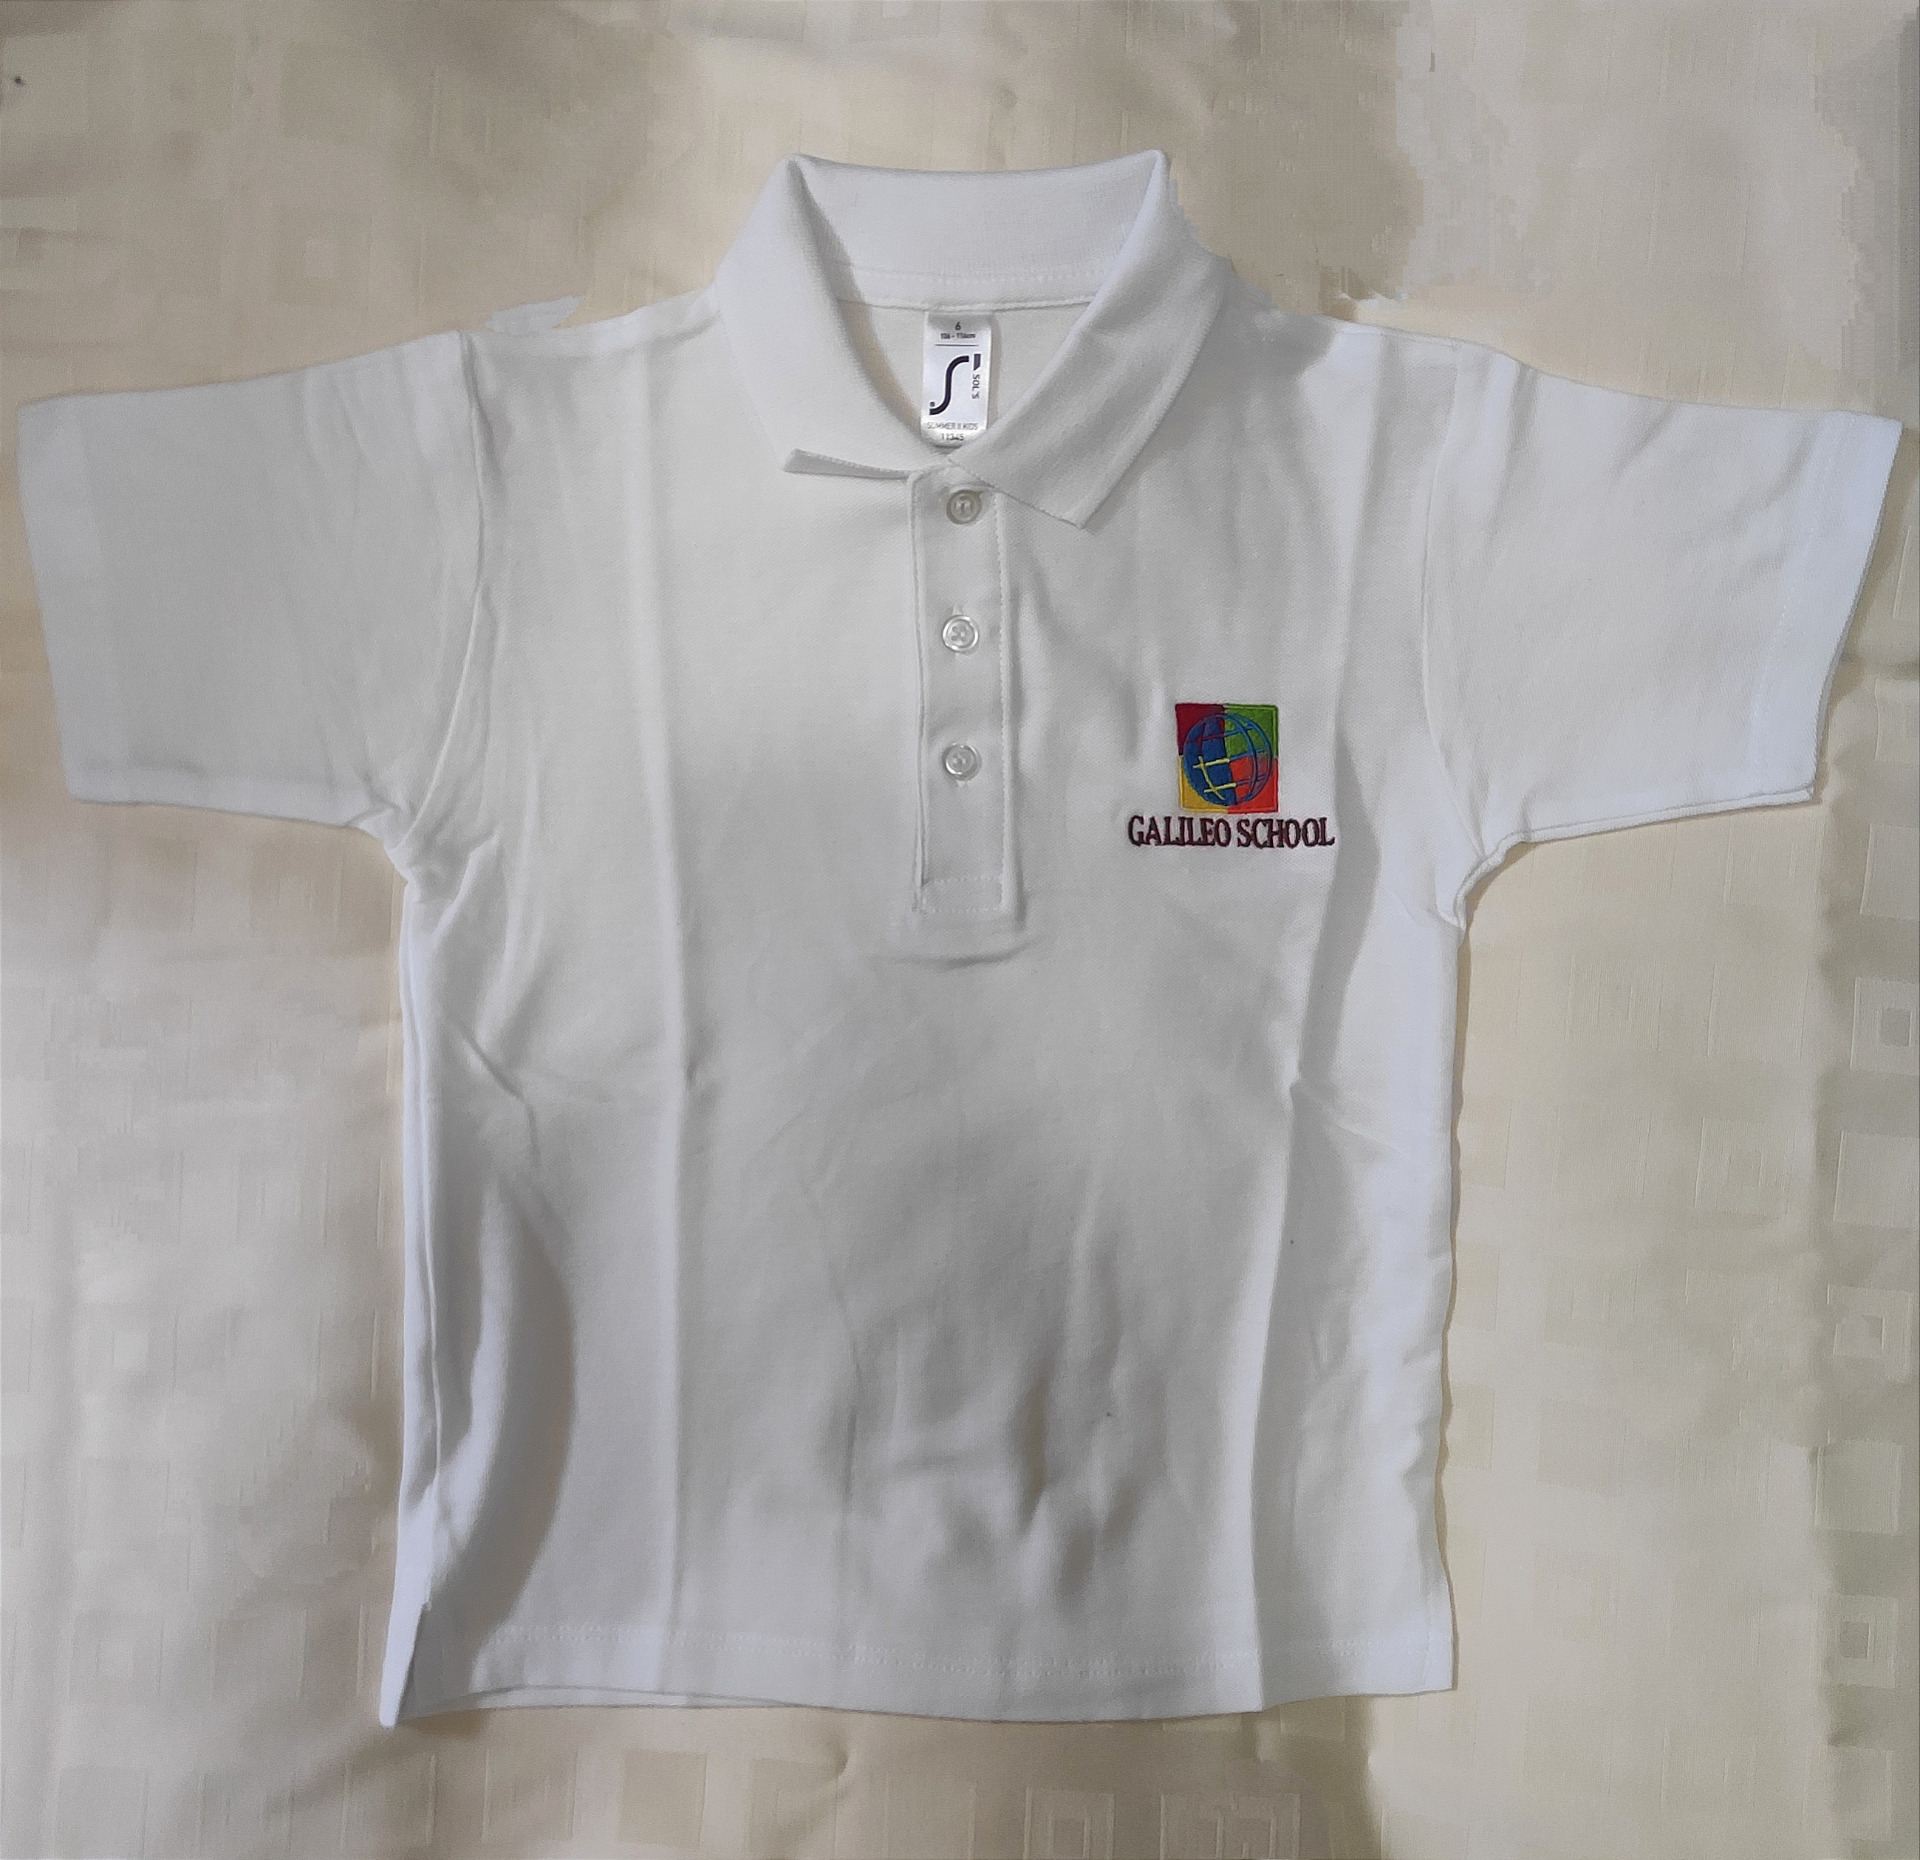 polo košela krátky rukáv - biela / short sleeve polo shirt - white; 

cena / price: cena 14€